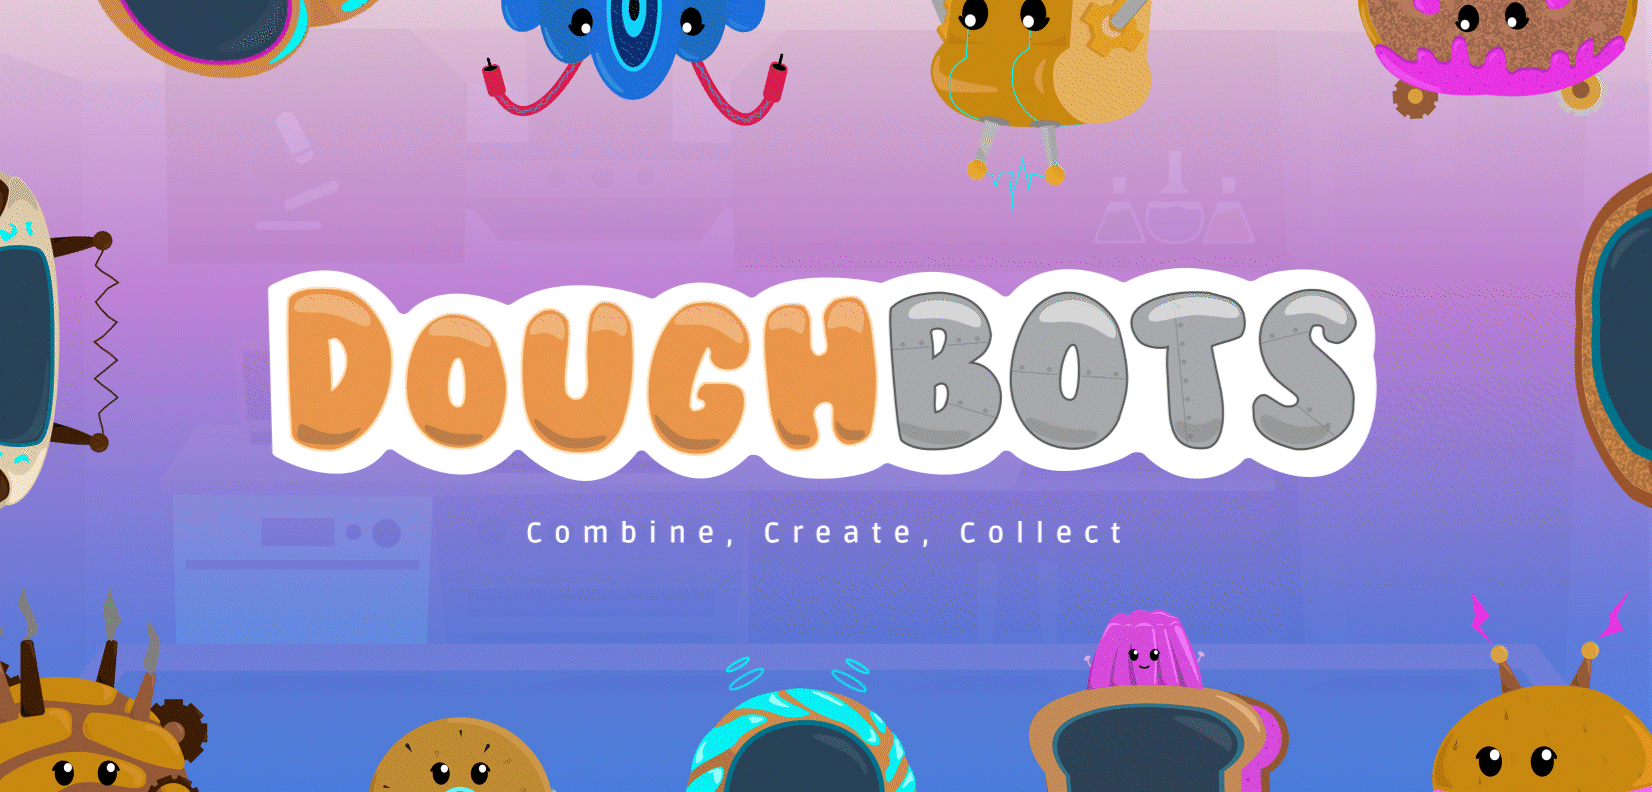 DoughBots_Banner